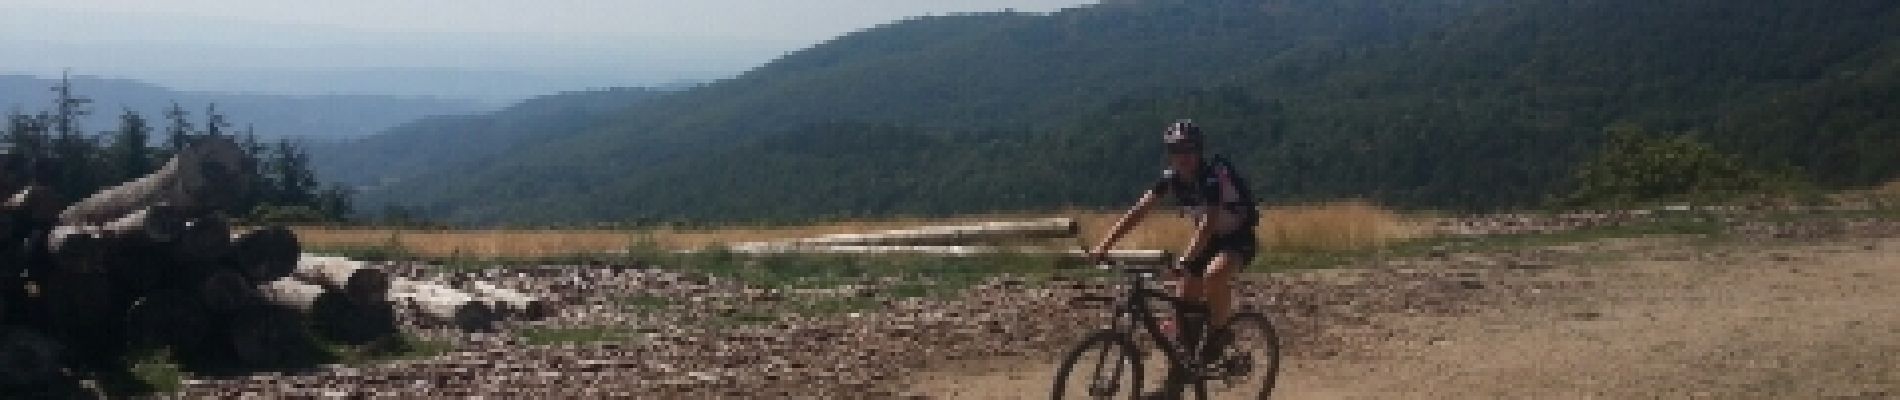 Tour Mountainbike Joannas - roubreau col des langoustines la boule rocles roubreau - Photo